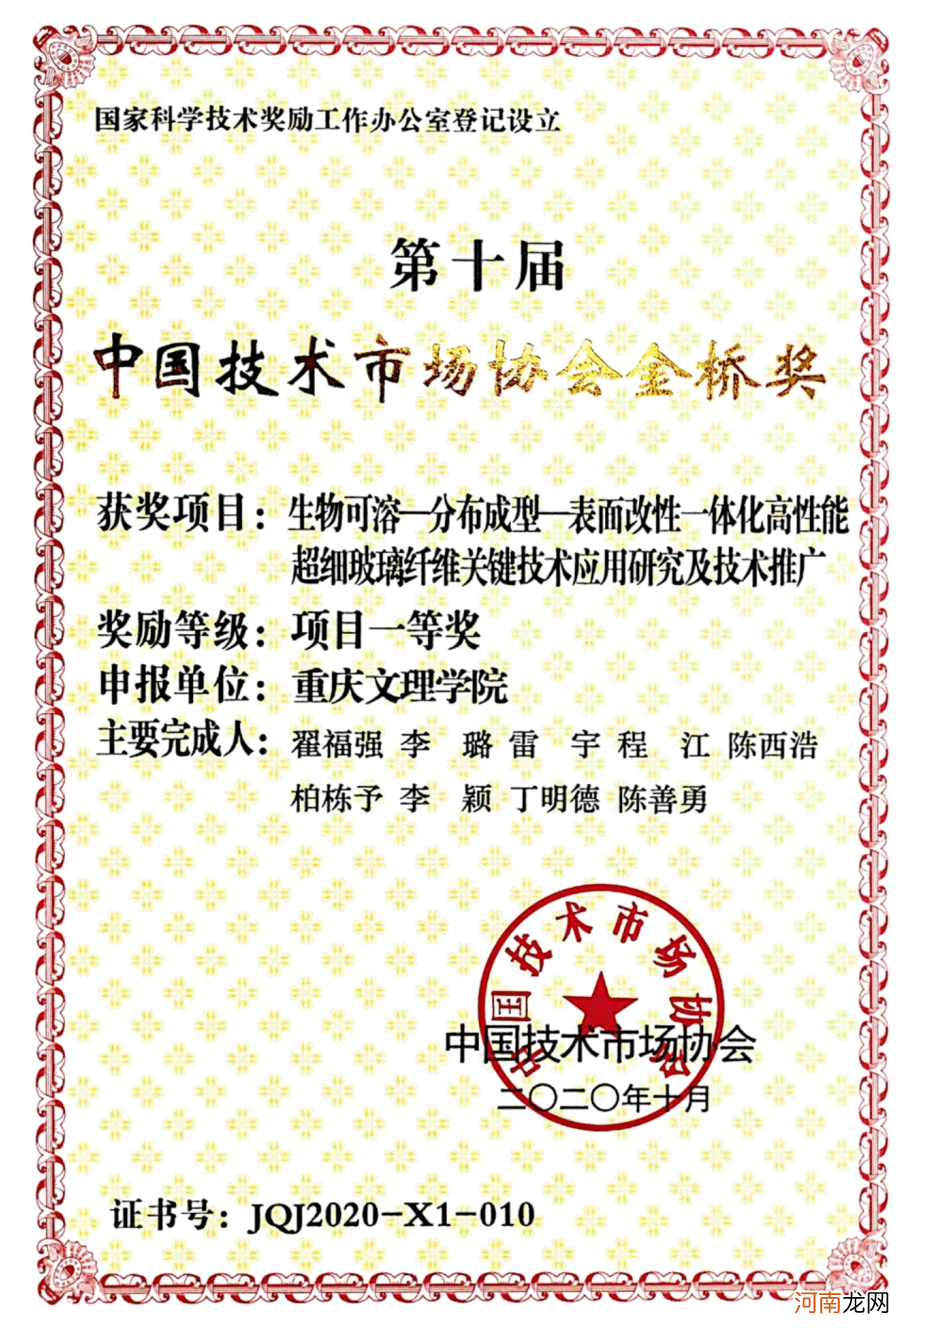 重庆文理学院创业扶持计划 重庆文理学院学生资助管理中心